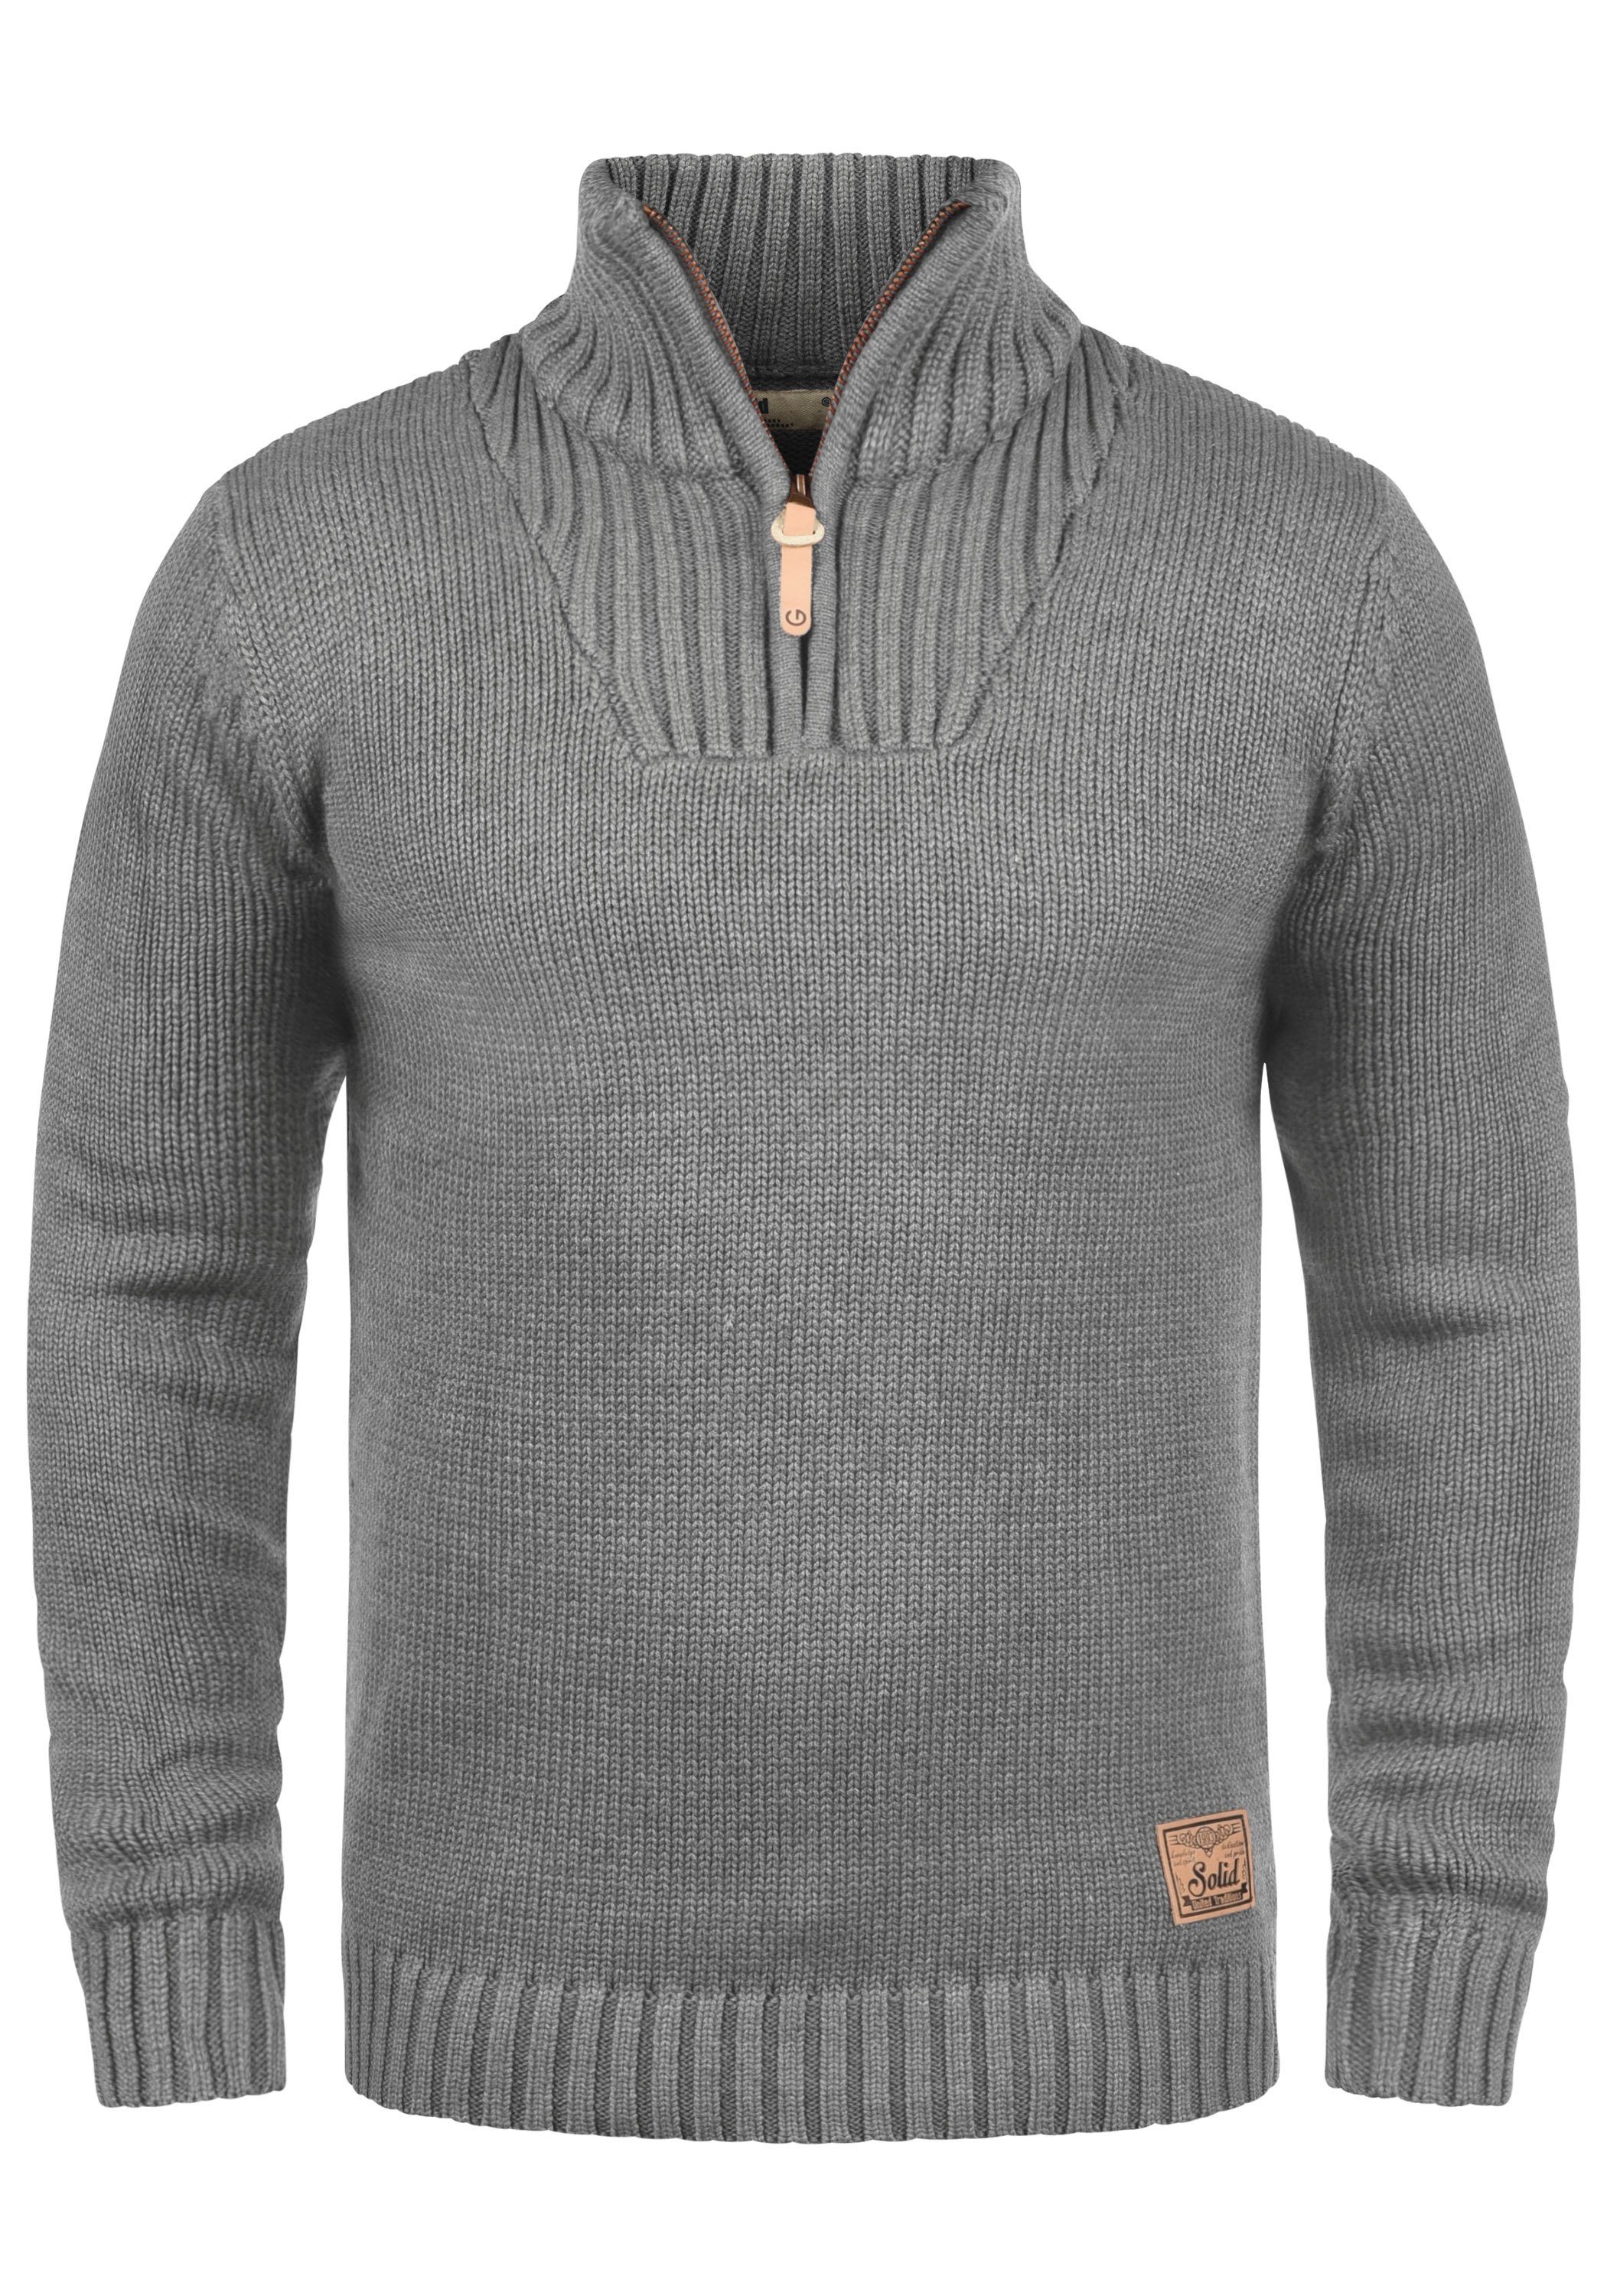 Solid Herren-Pullover online kaufen | OTTO